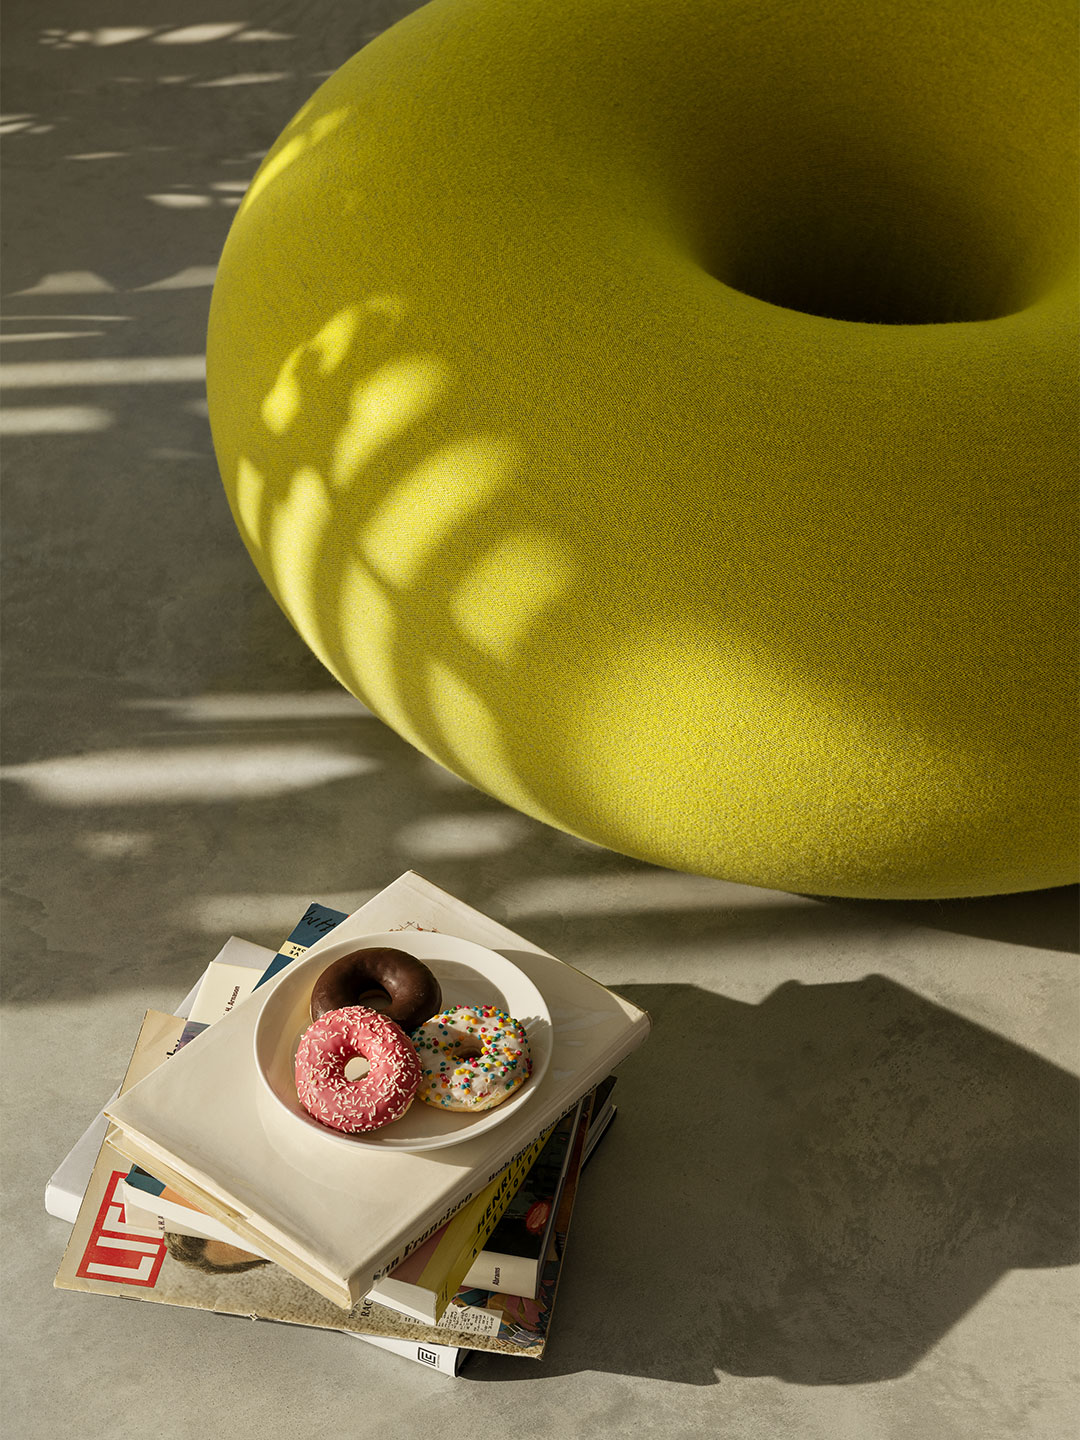 Doughnut-inspired Boa pouf by Sabine Marcelis for Hem